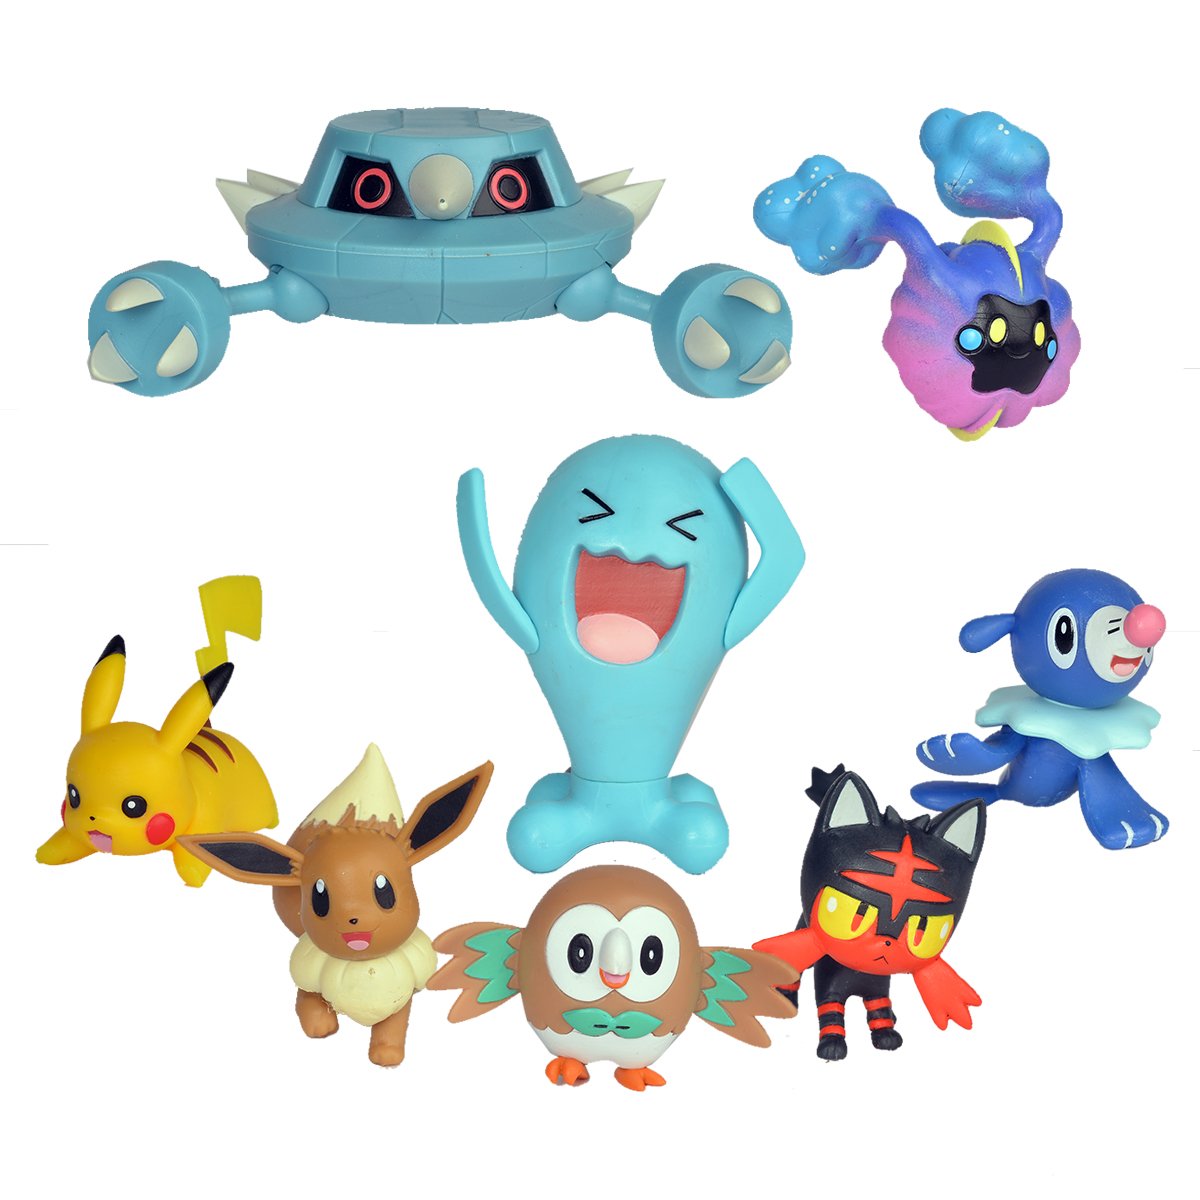 Pack de 6 figurines Pokémon Battle Ready - La Grande Récré